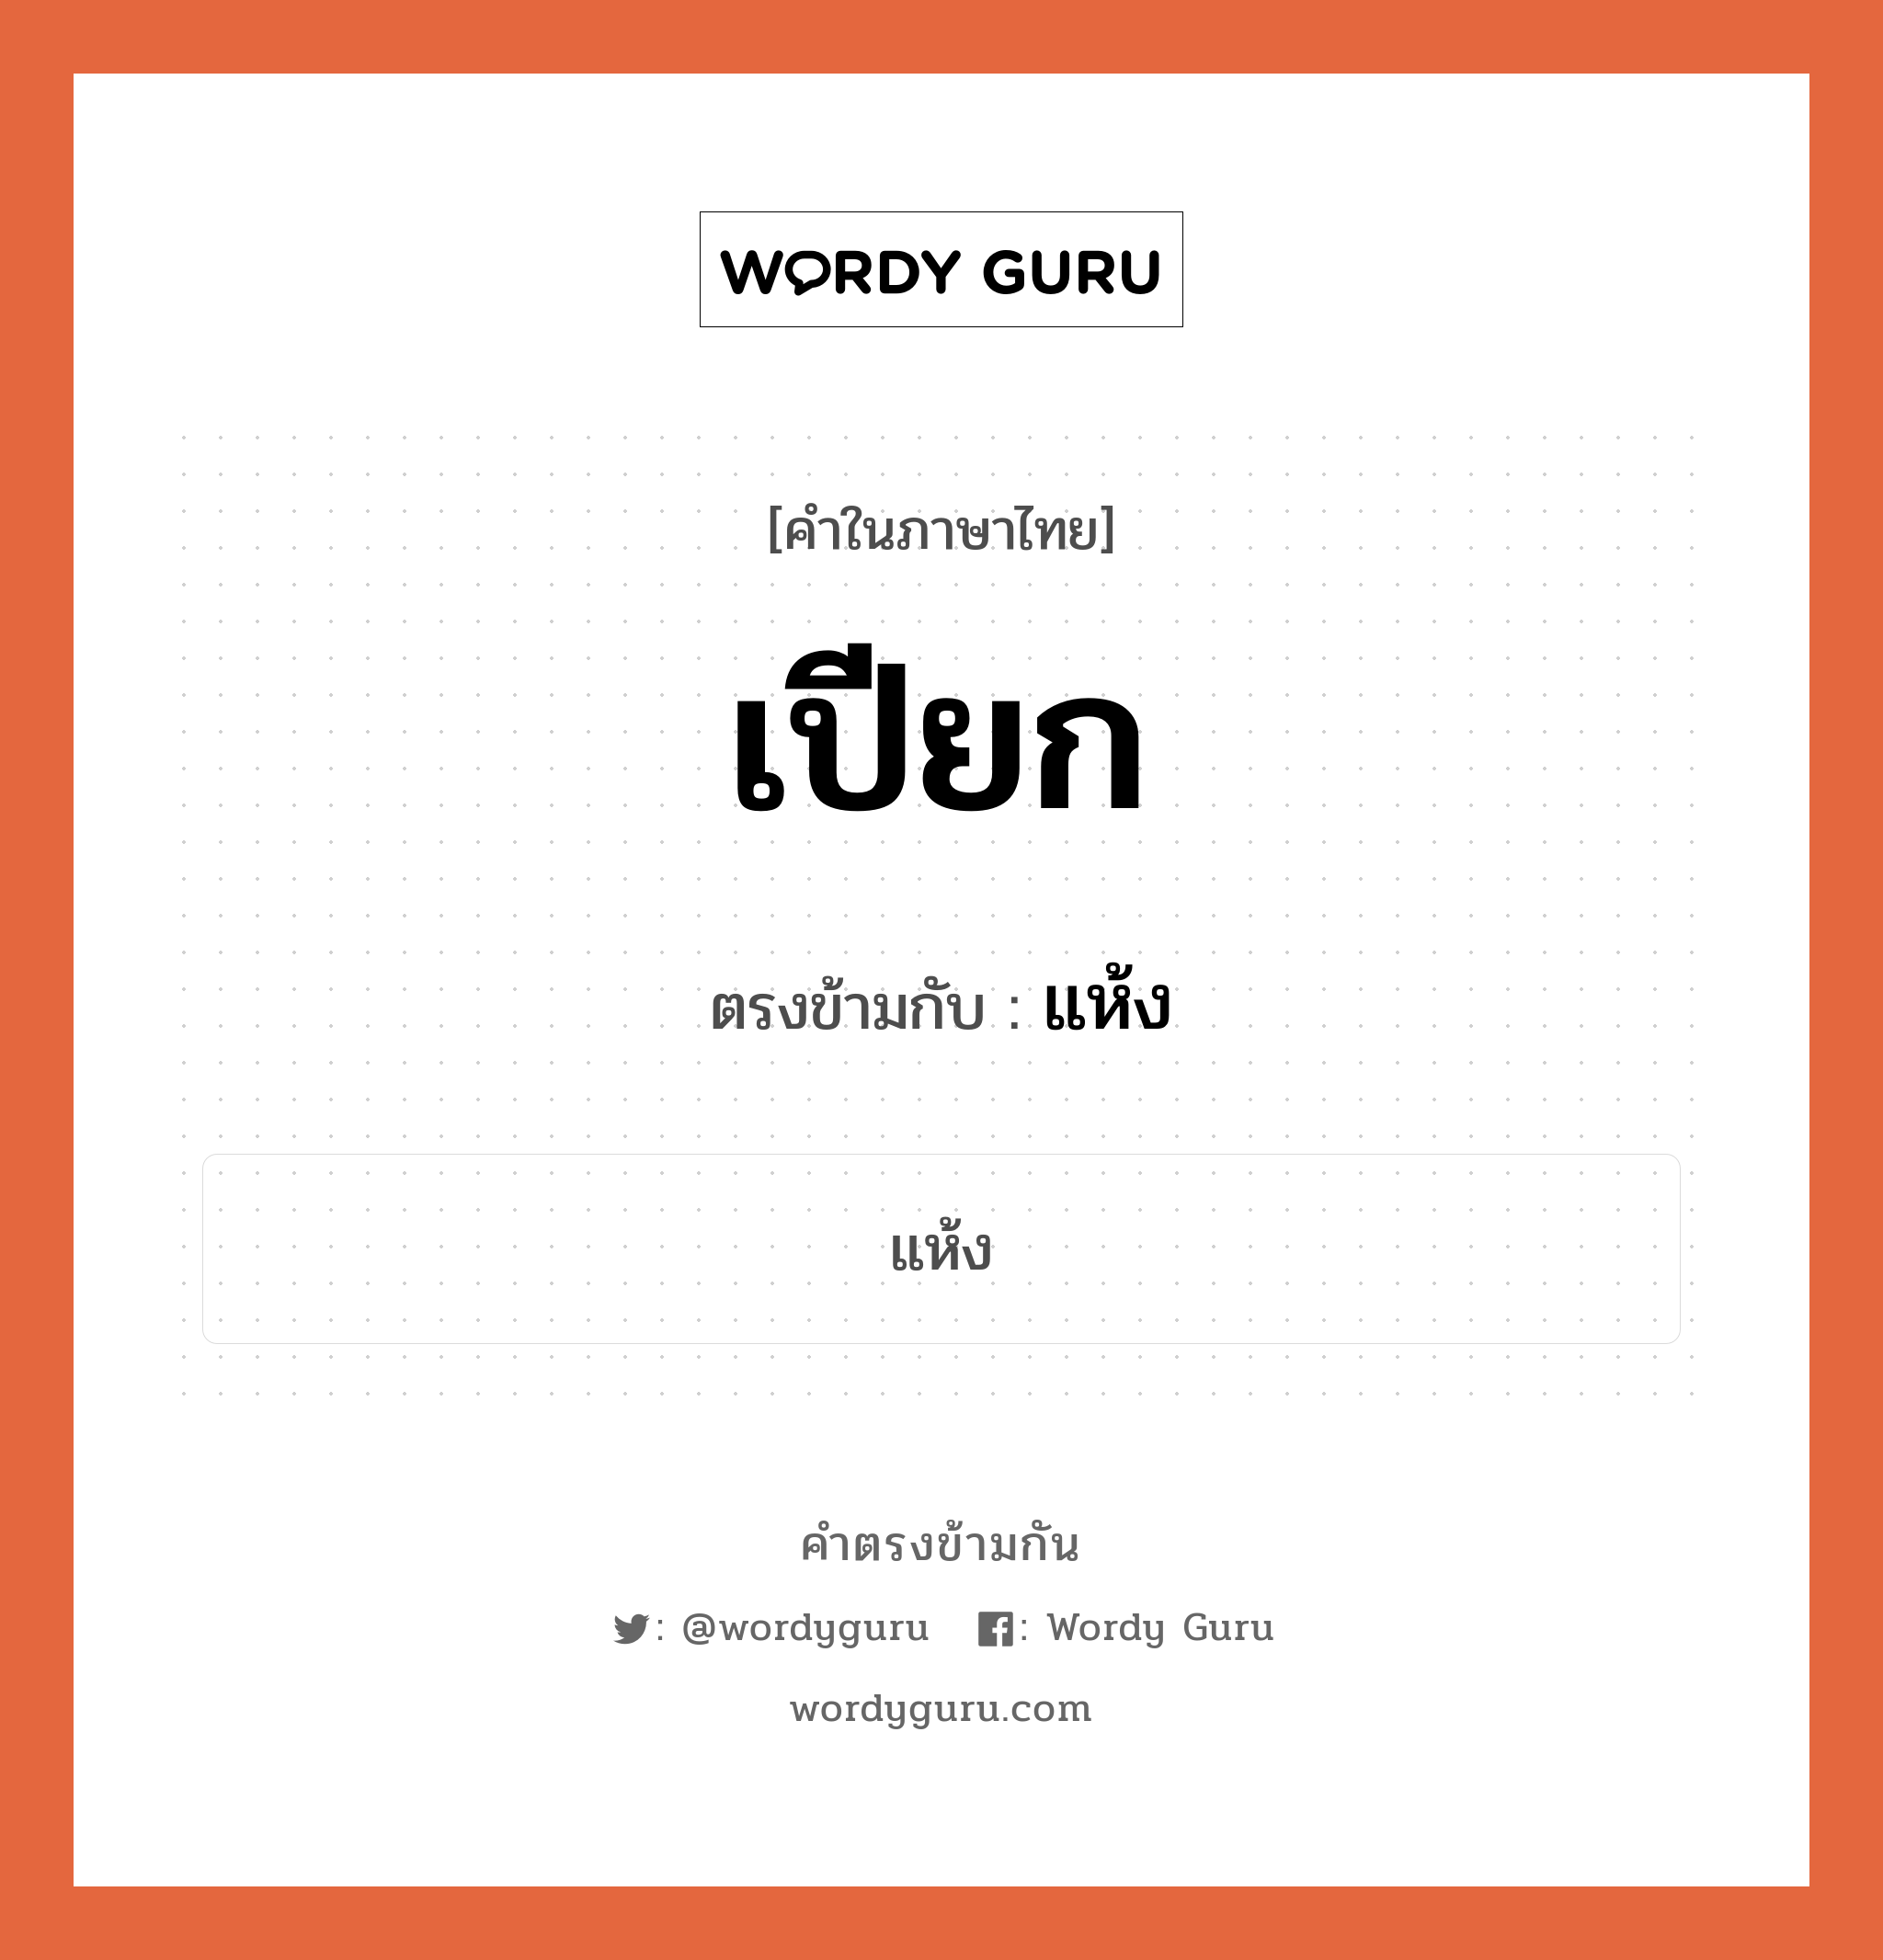 เปียก เป็นคำตรงข้ามกับคำไหนบ้าง?, คำในภาษาไทย เปียก ตรงข้ามกับ แห้ง หมวด แห้ง